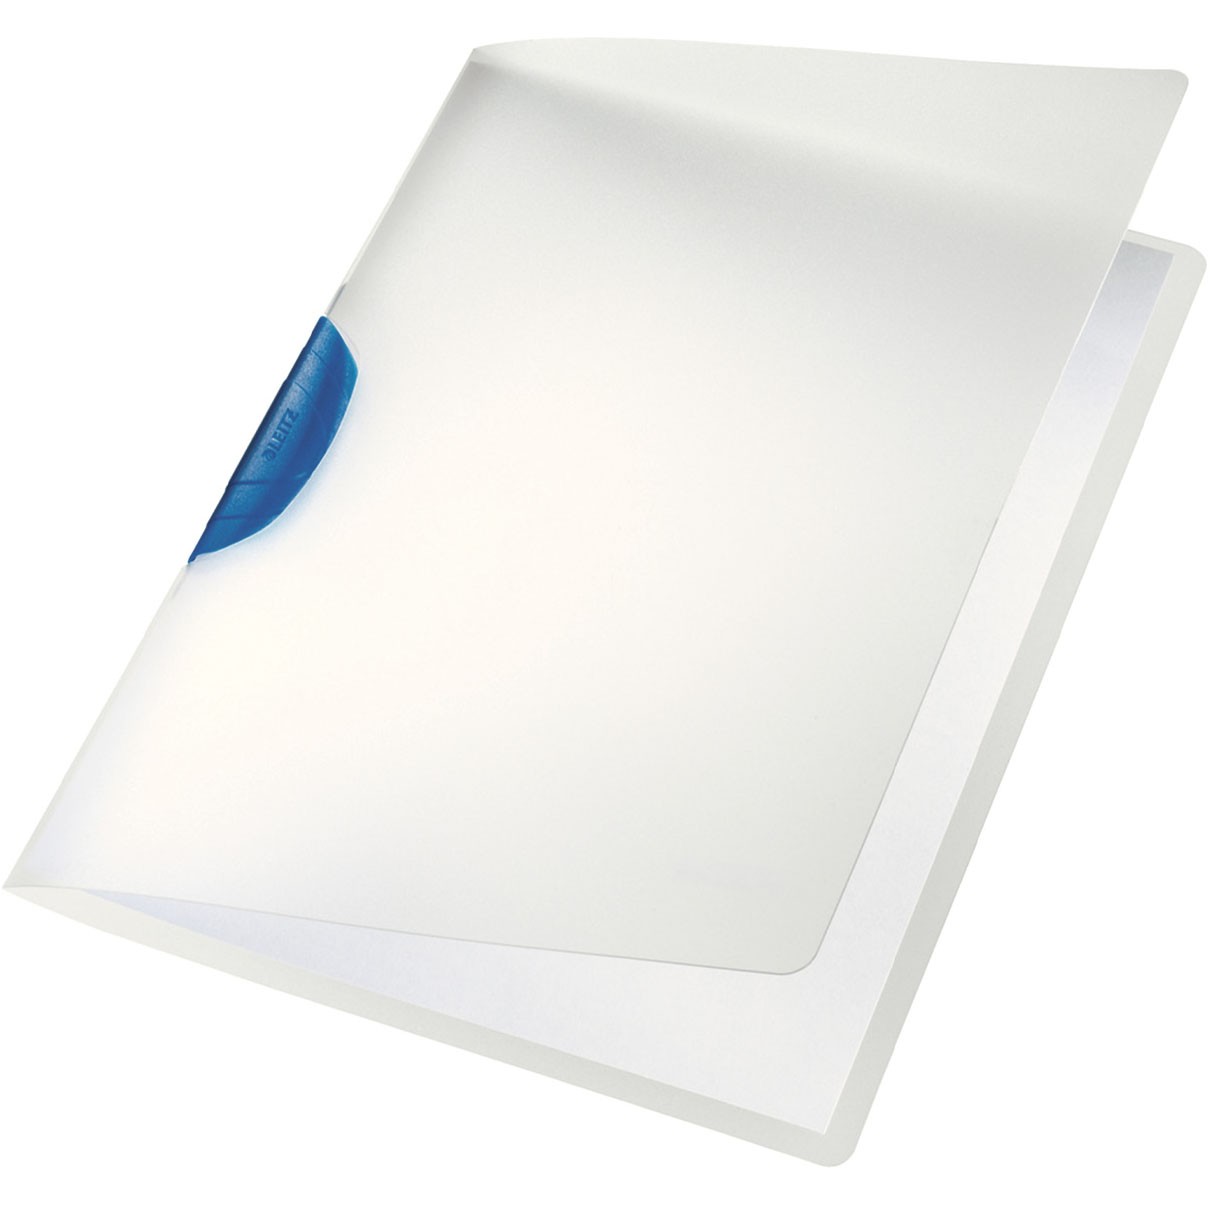 Leitz Color Clip universalmappe i A4 i farven blå